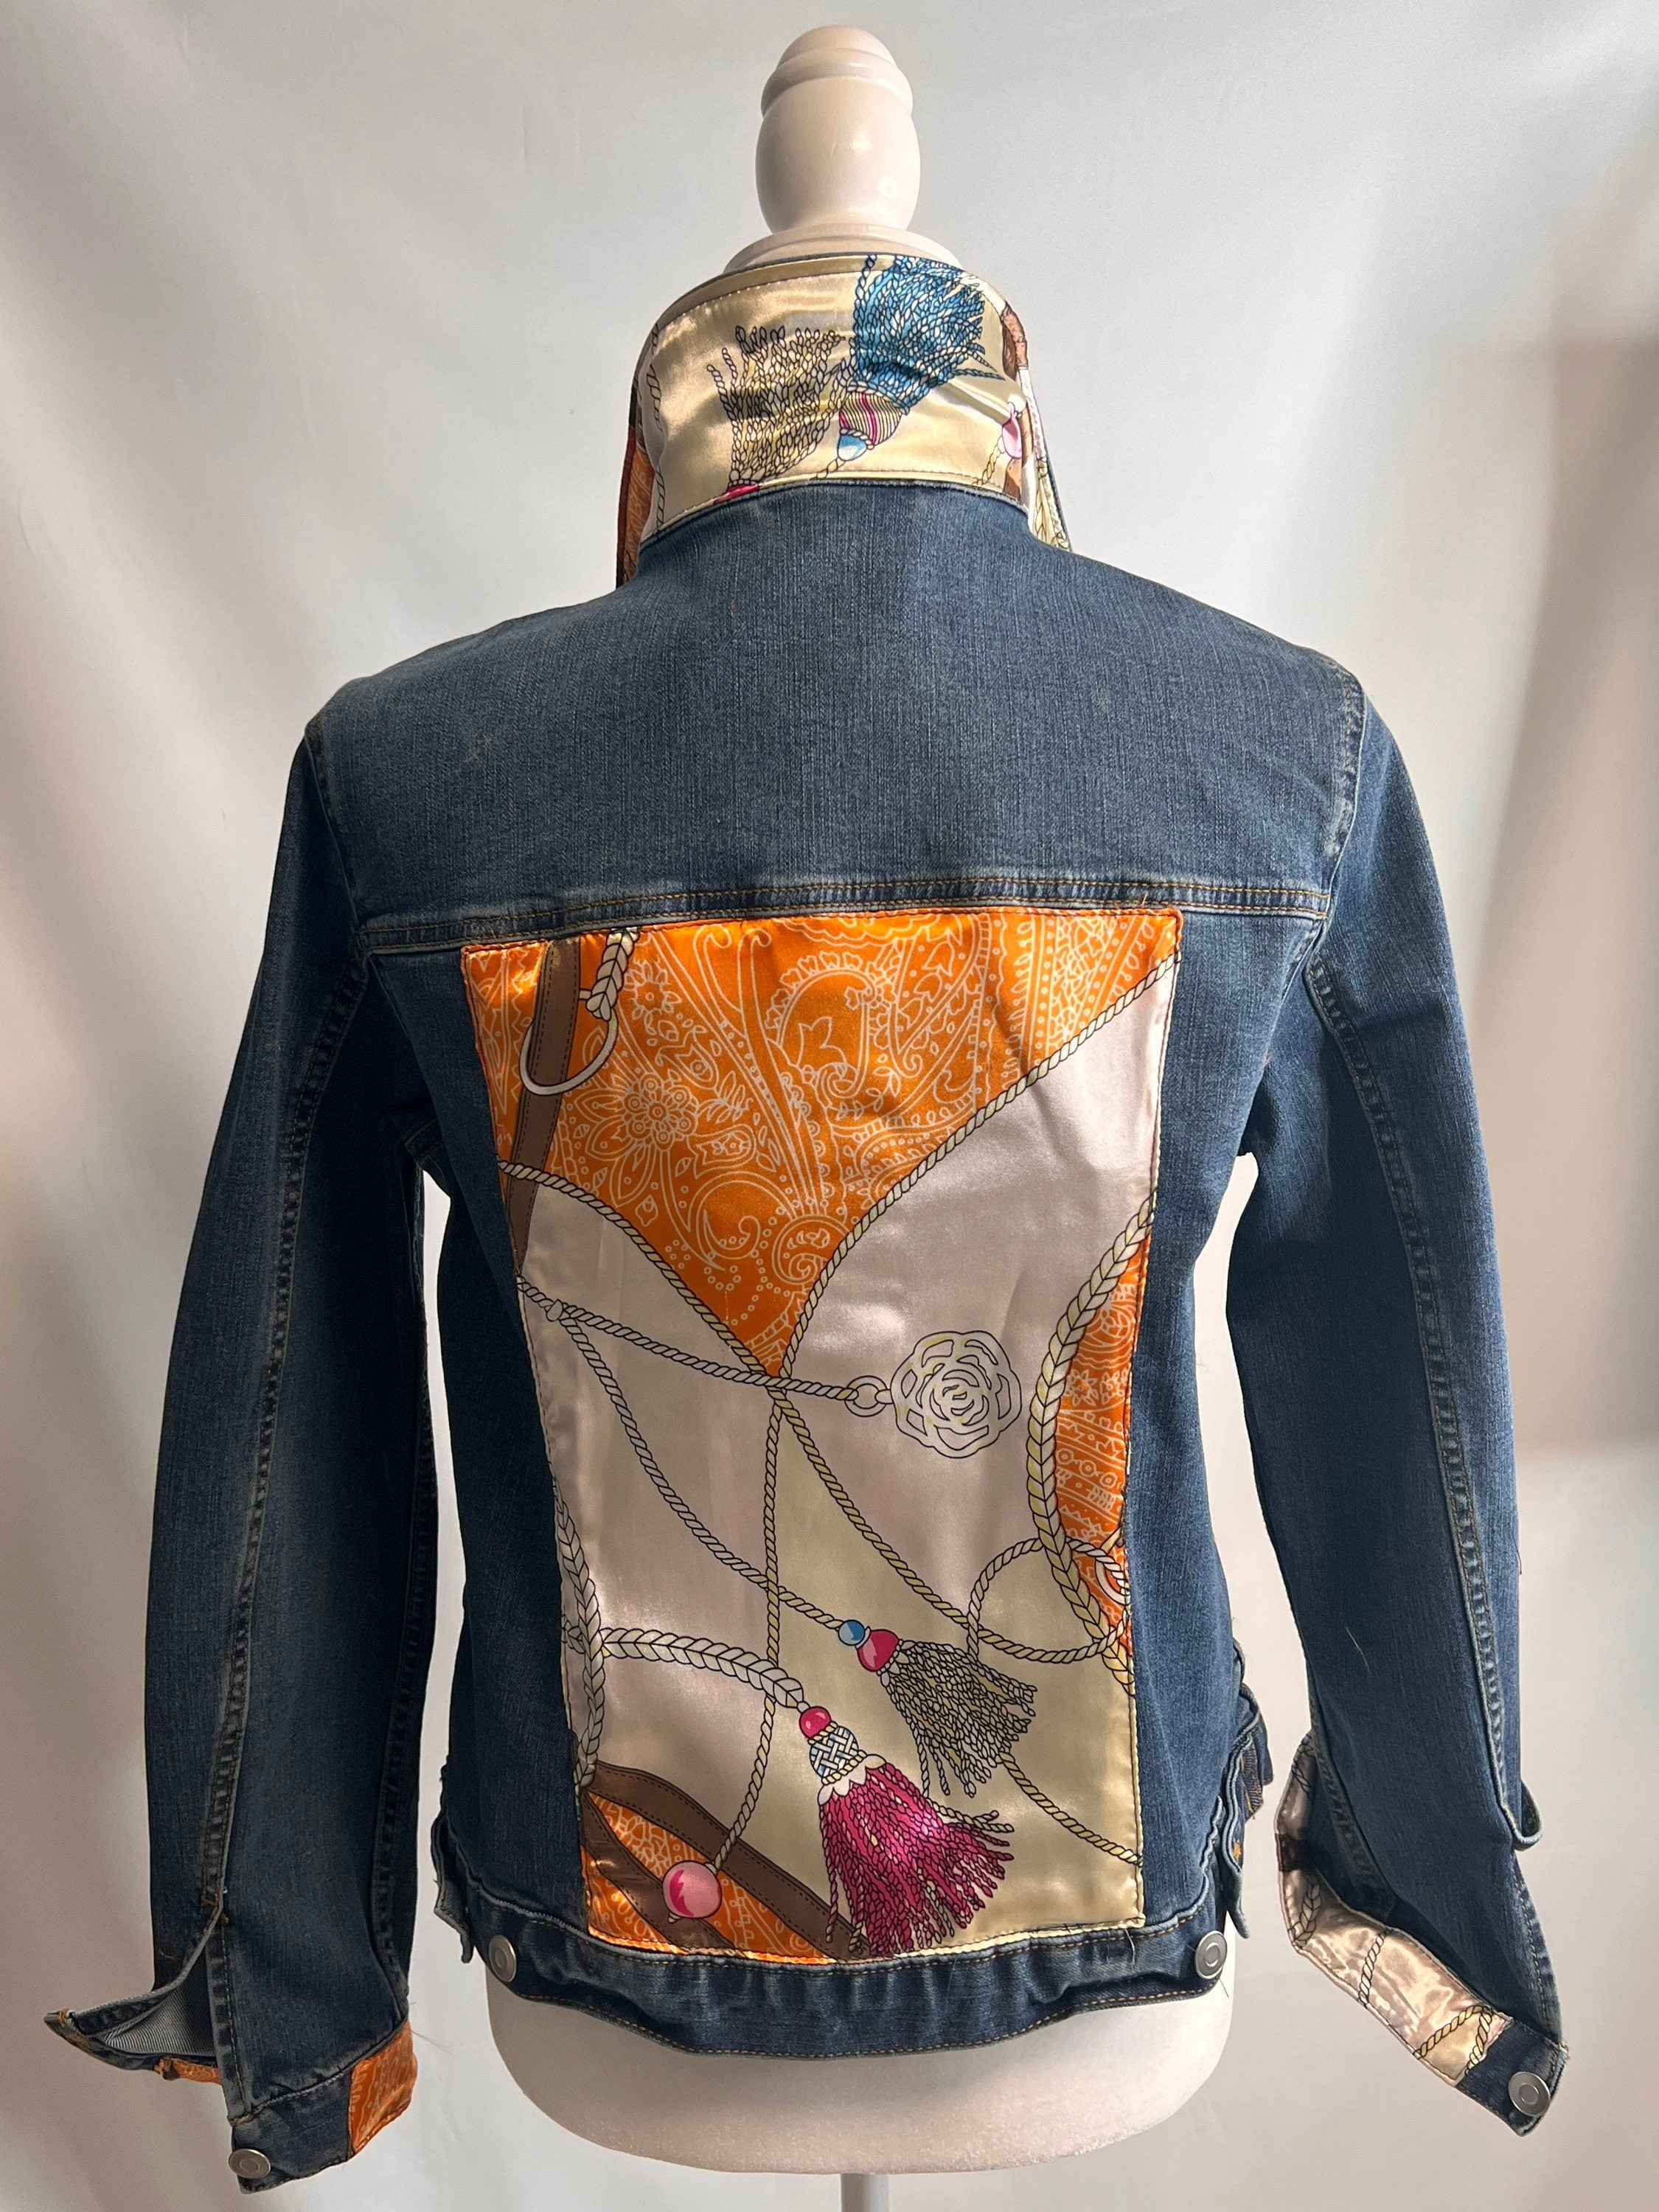 J. Crew distressed denim jacket with Ferragamo silk scarf, how to